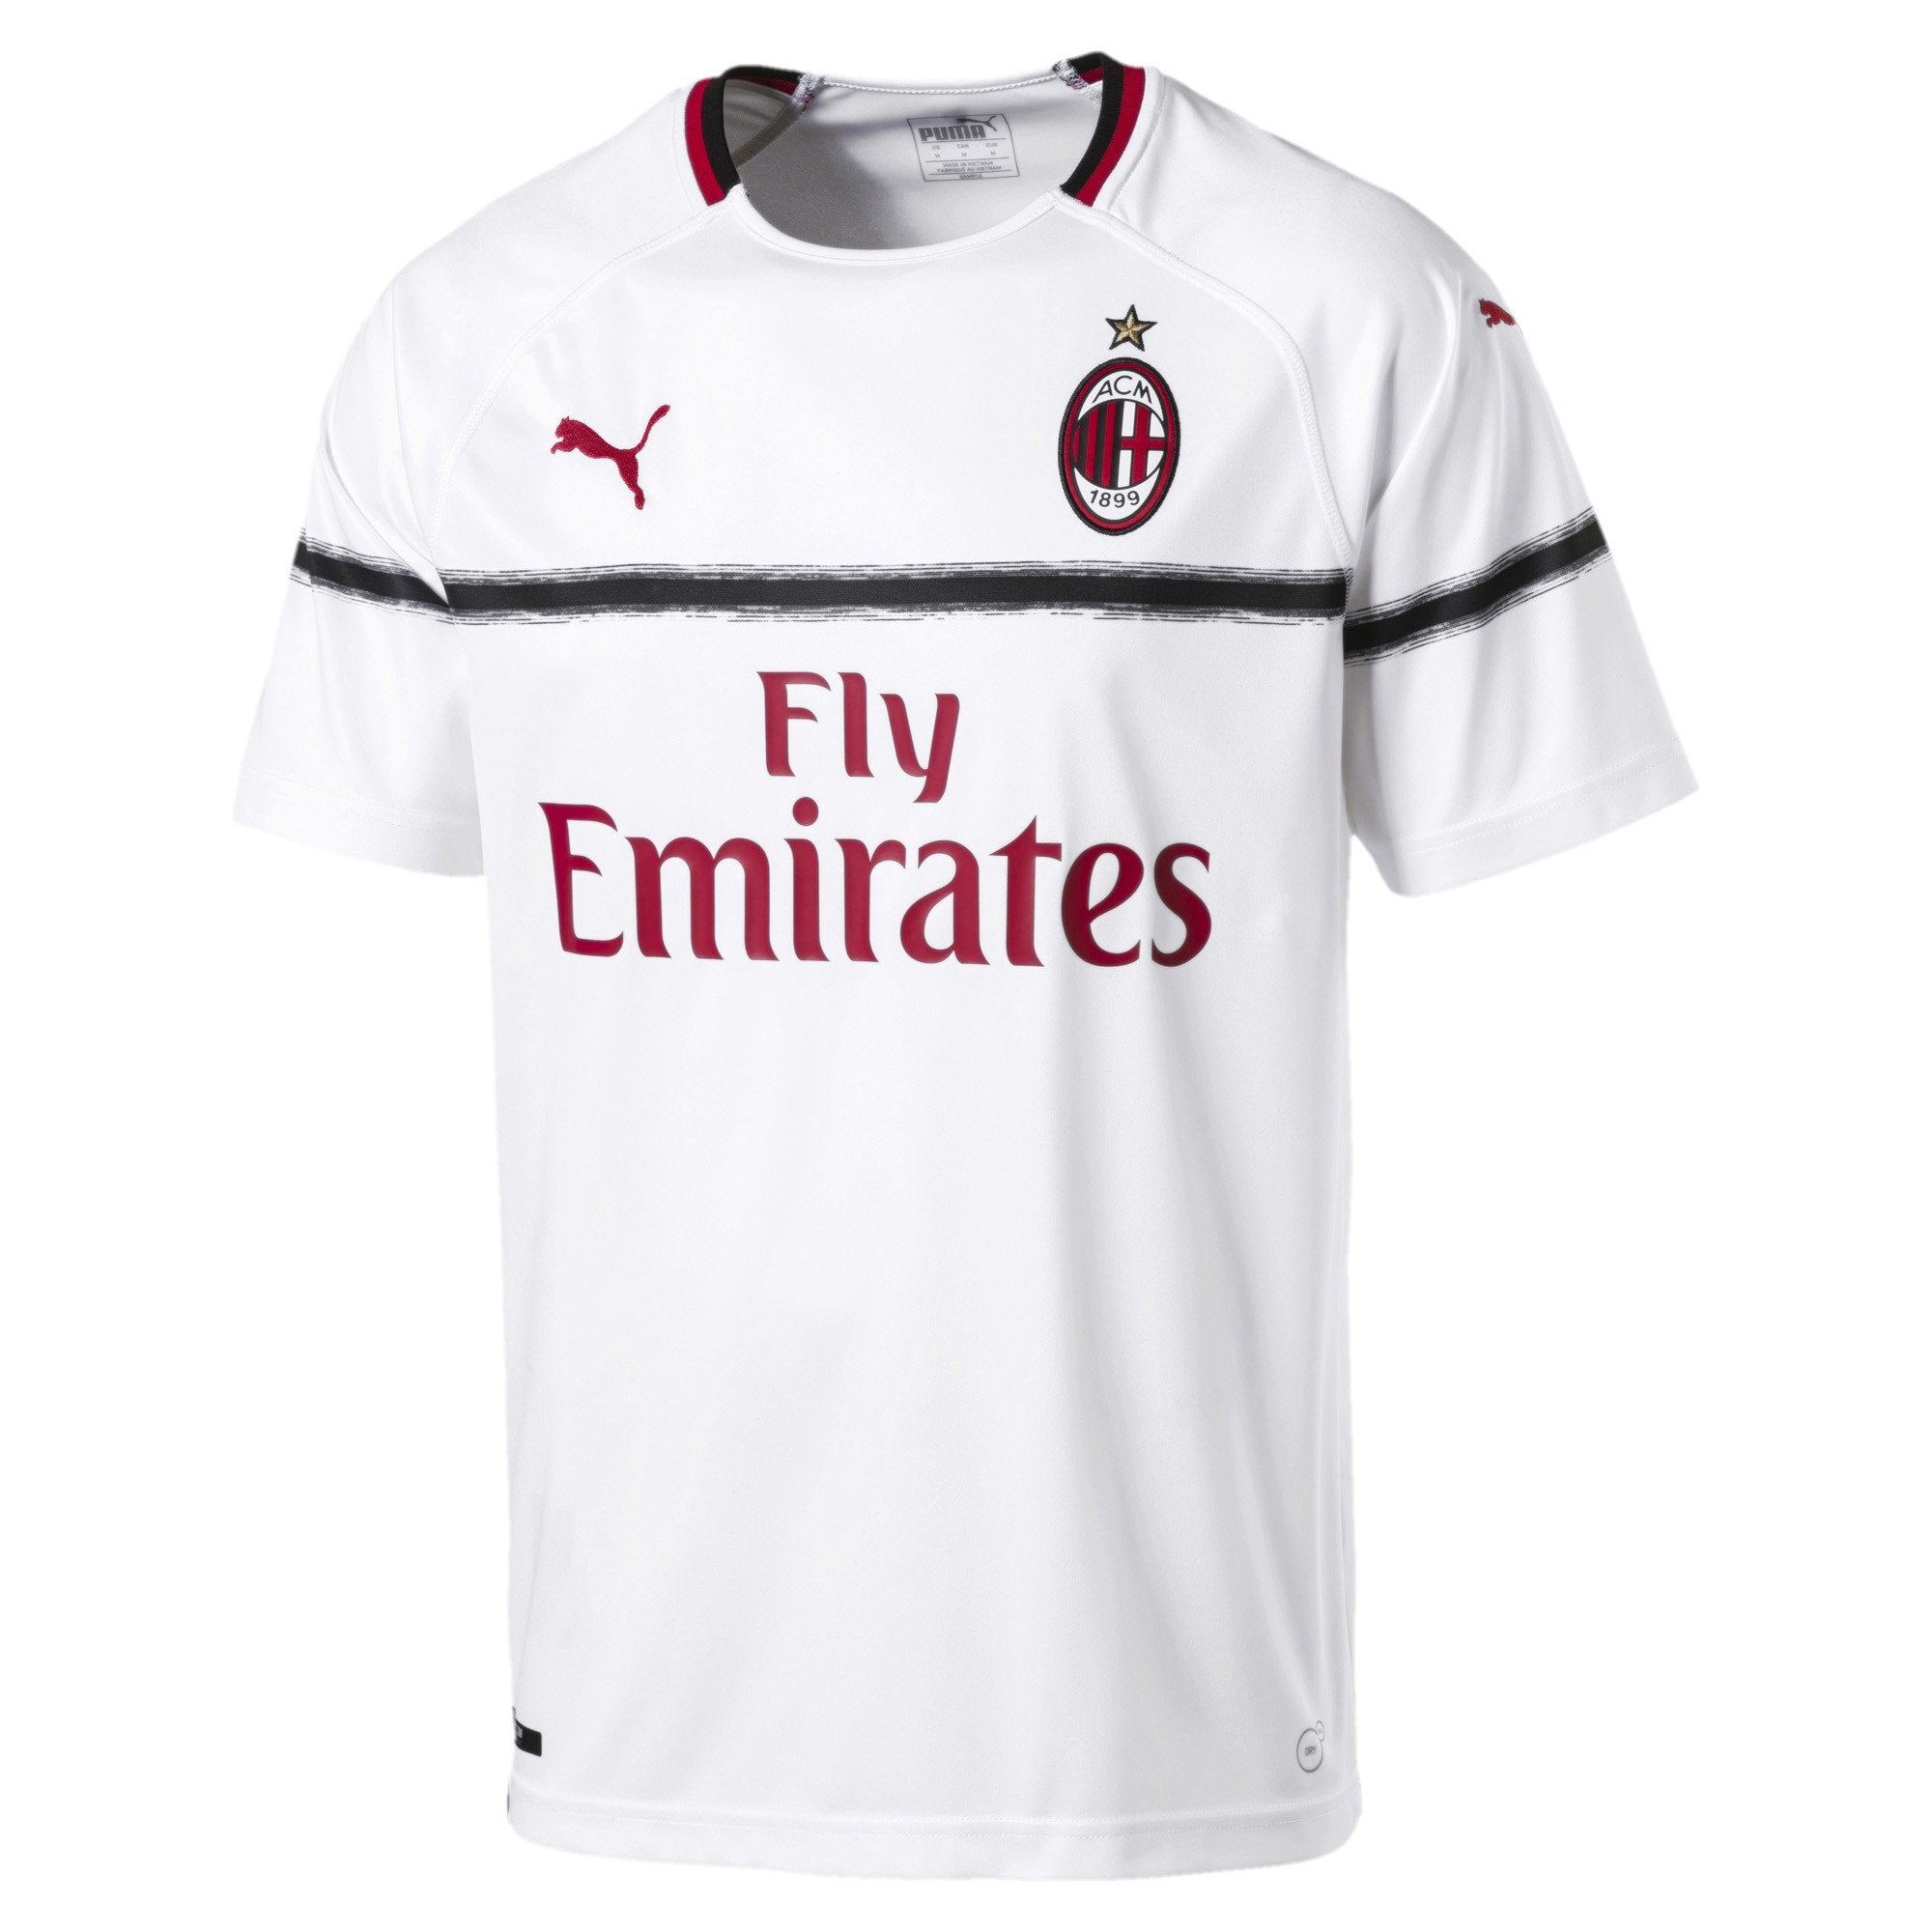 [754426-03] Mens AC Milan Away Jersey W/ Sponsor